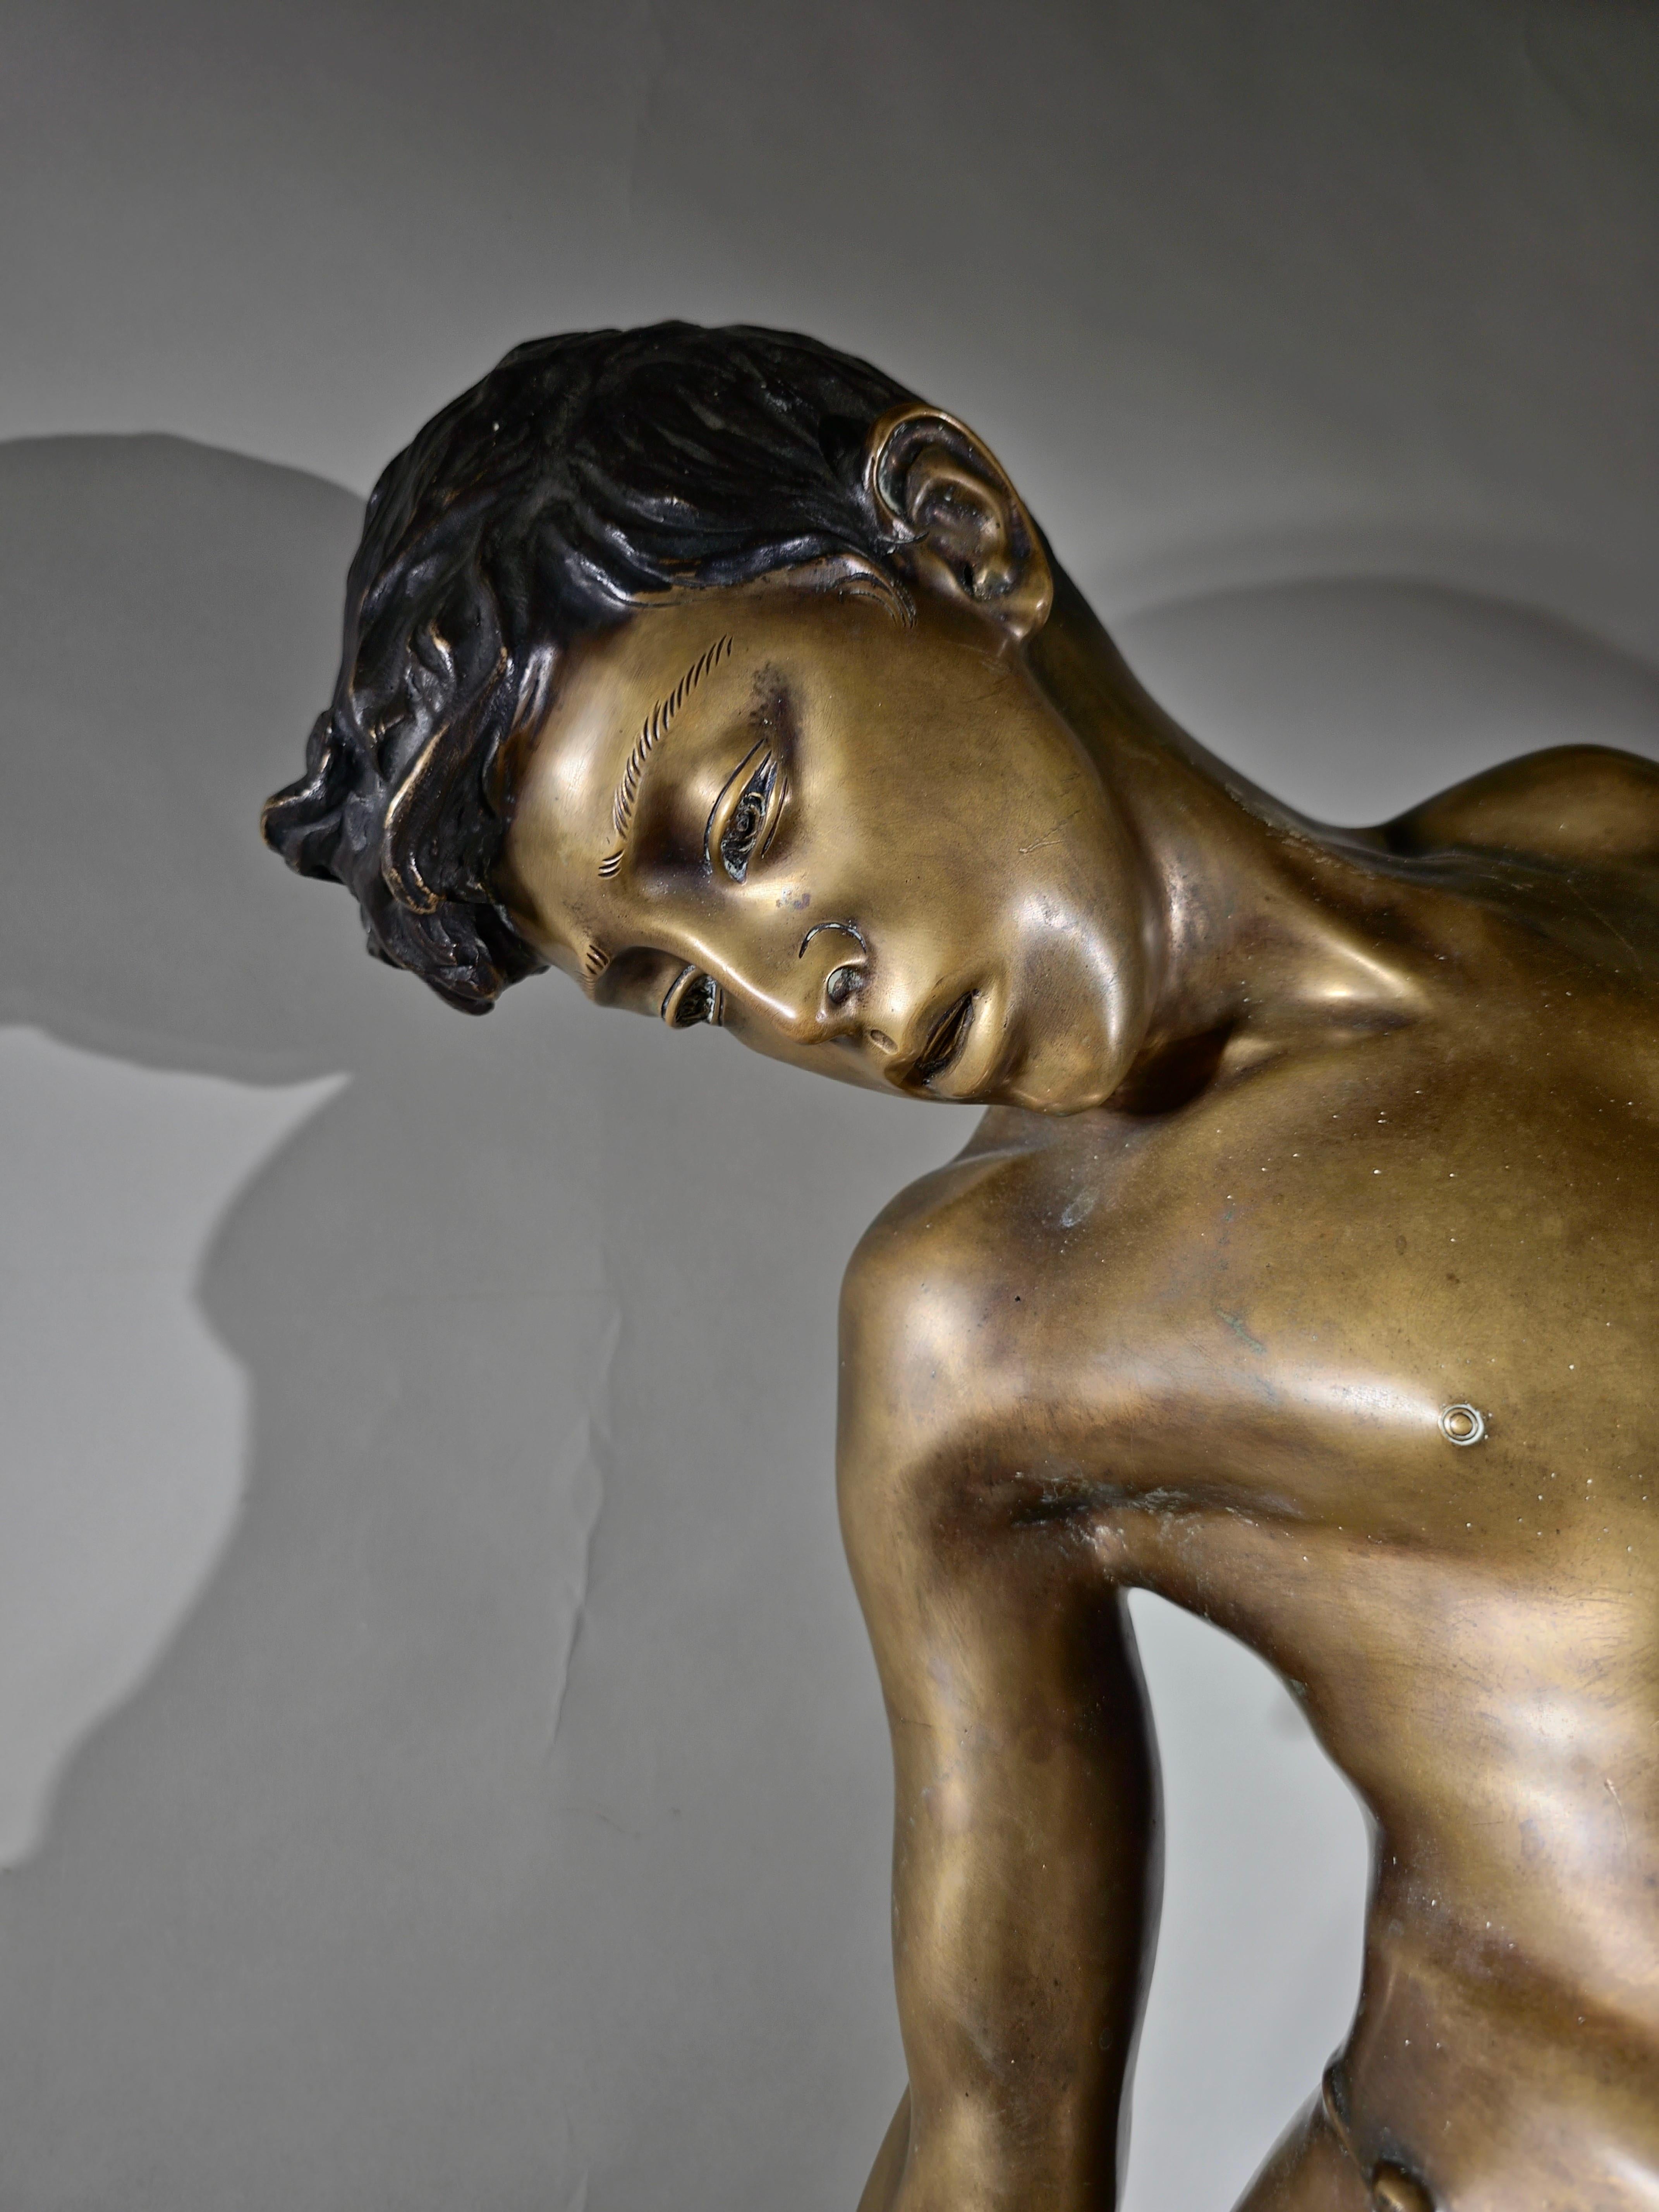 Diese beeindruckende Bronzeskulptur zeigt ein Kind, das von einer Krabbe gebissen wurde, und fängt einen dramatischen und emotionalen Moment ein. Dieses von dem berühmten Bildhauer Annibale De Lotto (San Vito di Cadore, 1877 - Venedig, 1932)